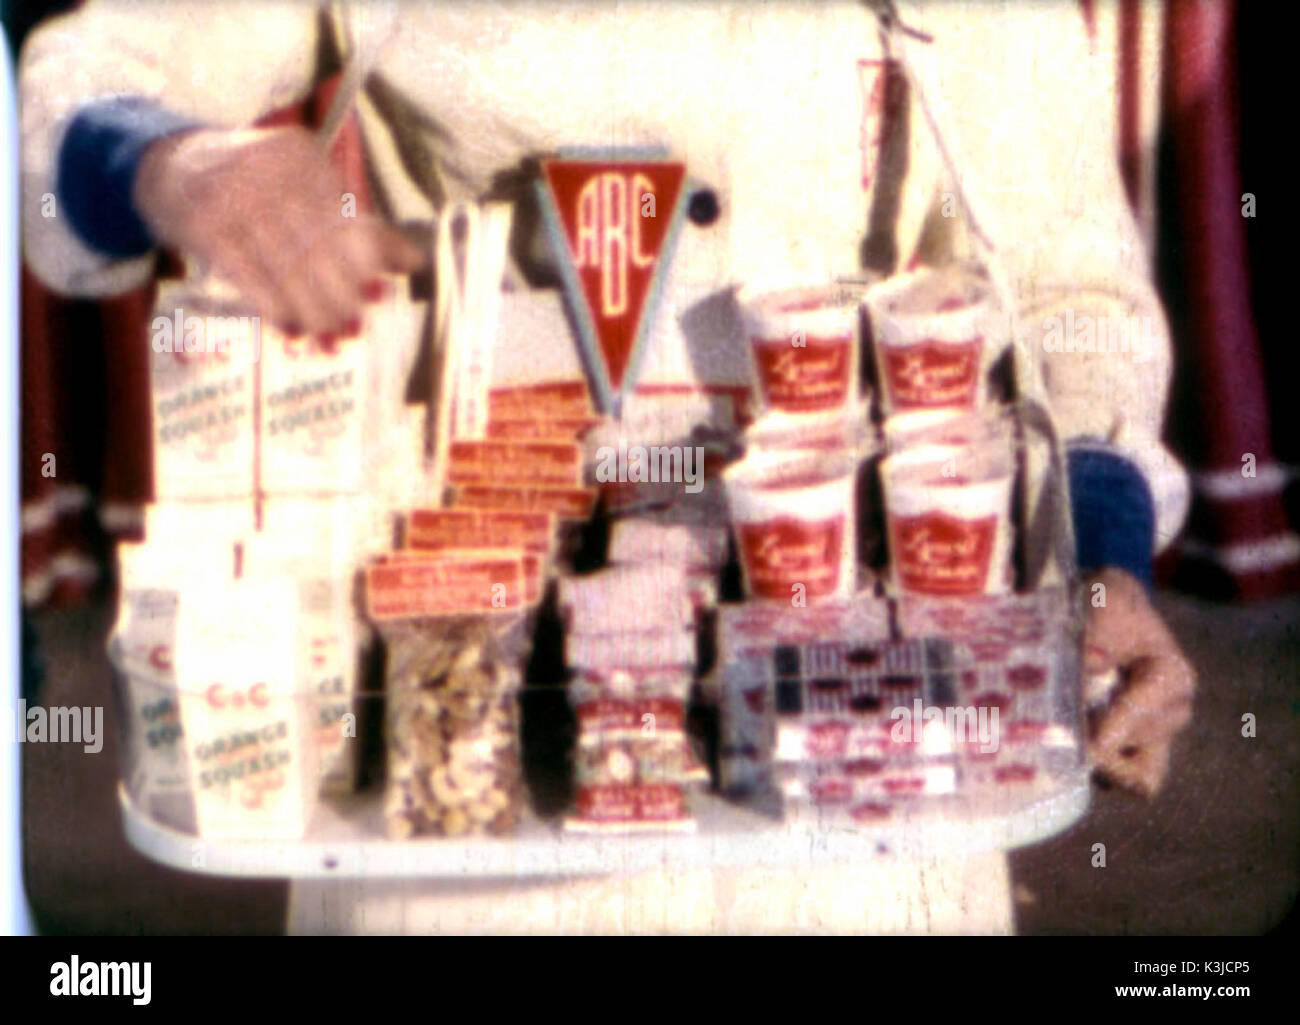 La fille avec le bac - un usherette vendeuse vend de la crème glacée, de noix, de boissons et de confiseries à partir du bac. à partir de 1950 un chiffre d'filmlet ABC Cinemas Banque D'Images